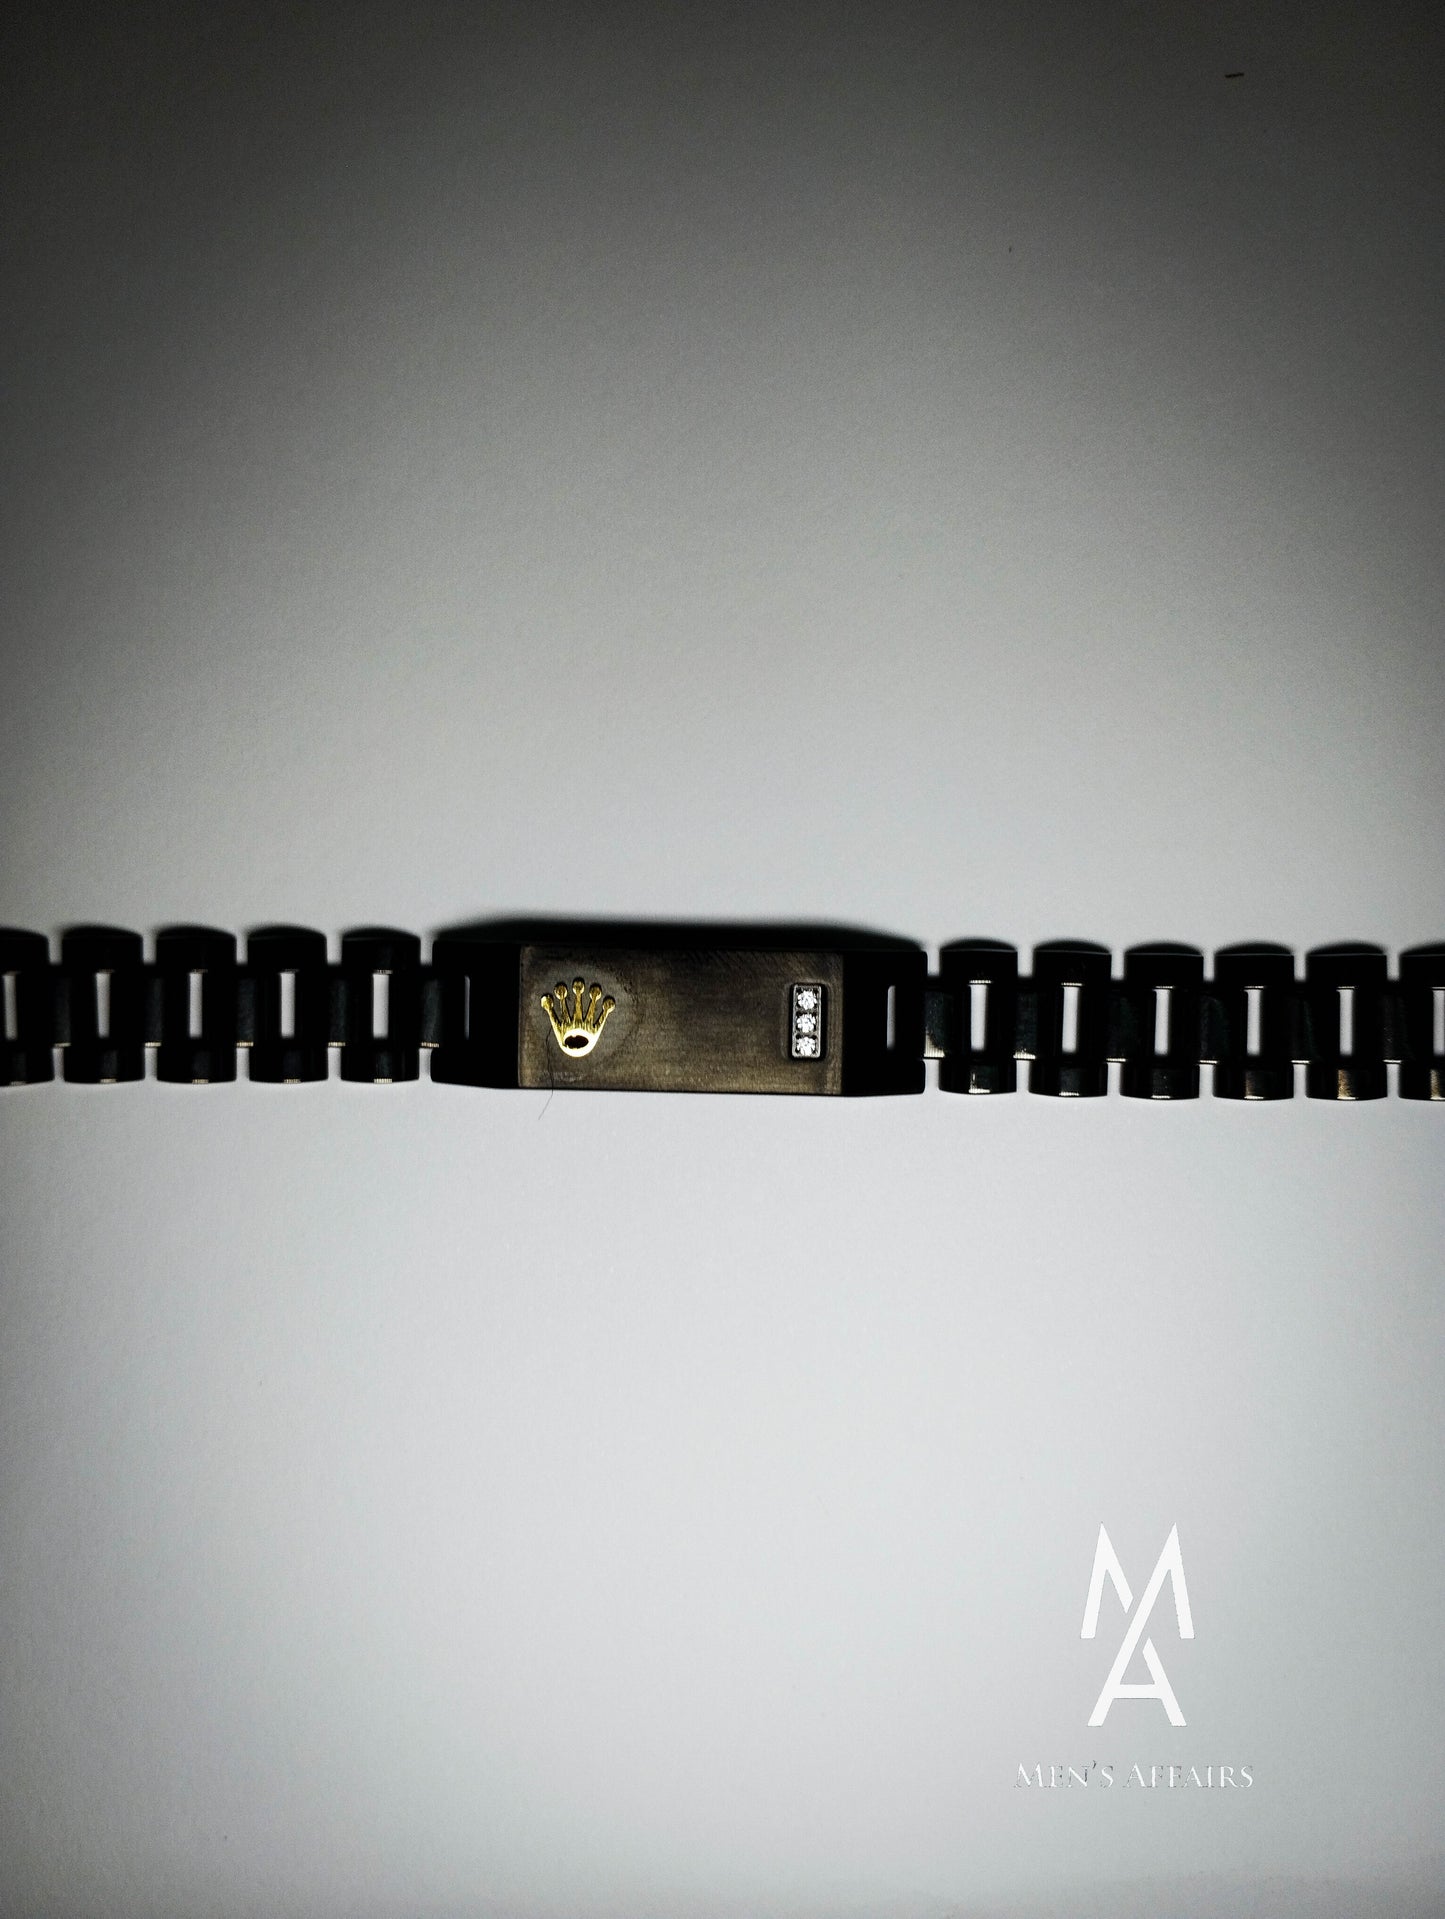 The Black Rolex Logo Bracelet – Men's Affairs